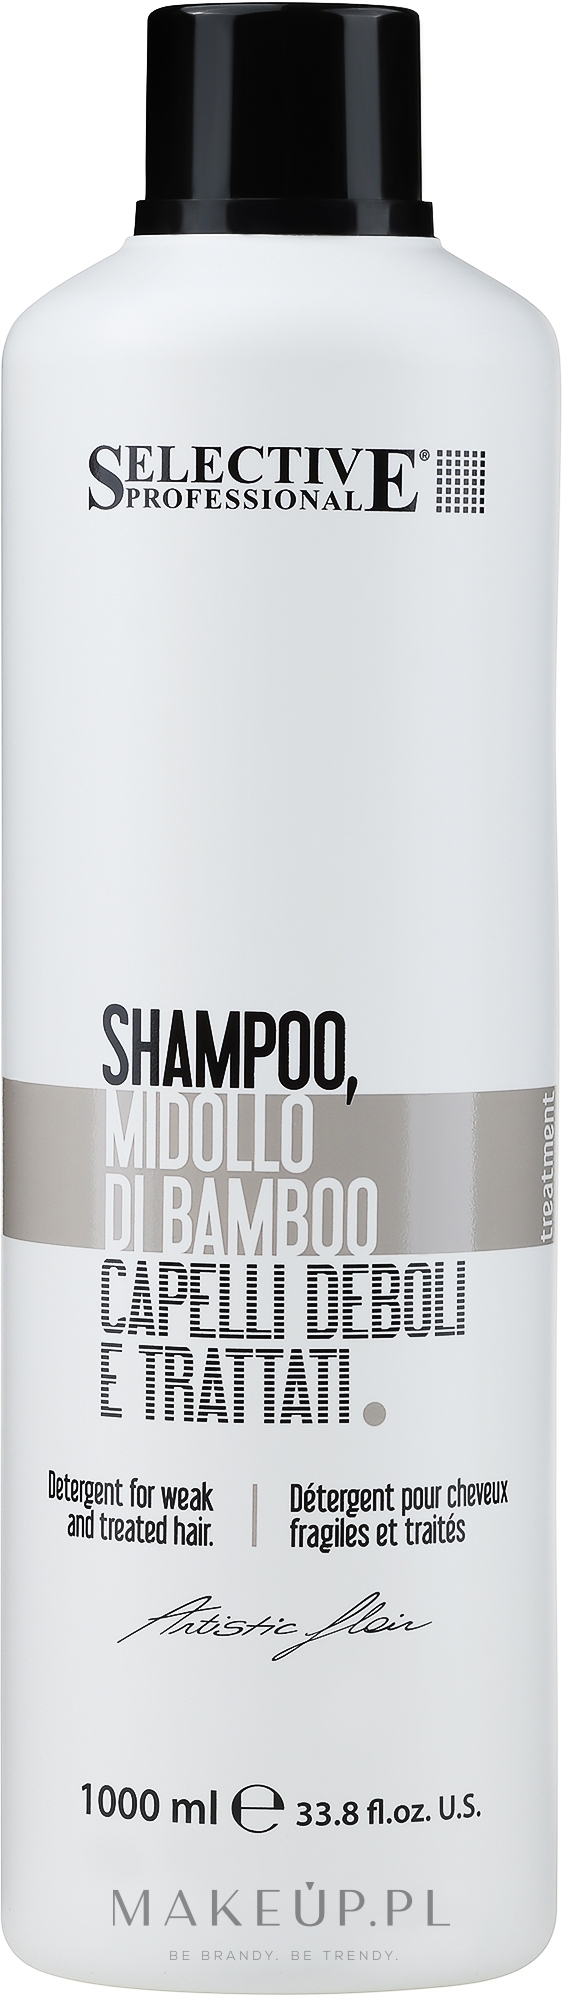 profesjonalny szampon regenerujący